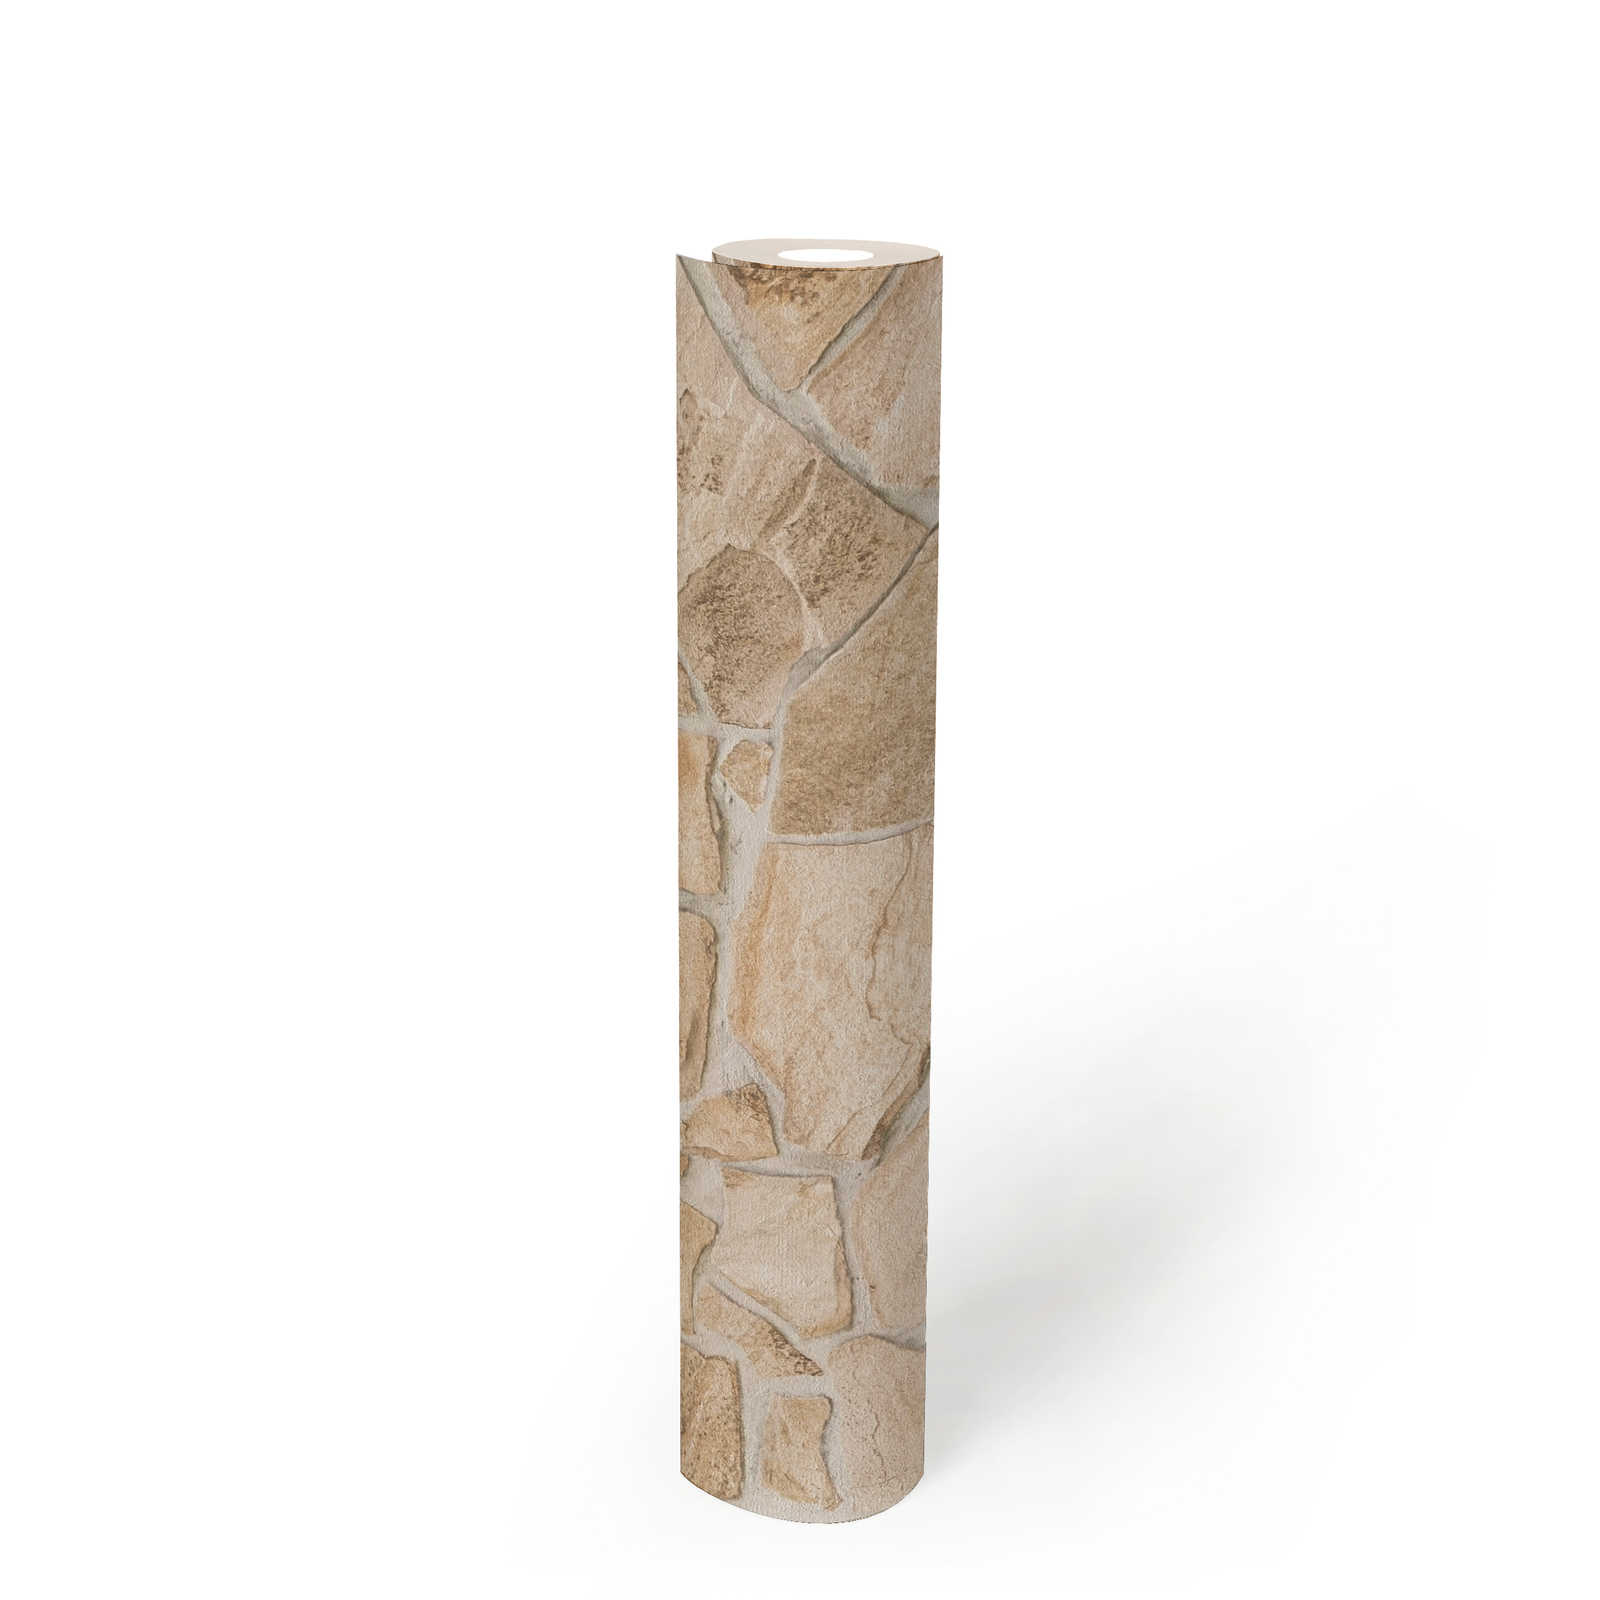             Carta da parati in pietra con ottica 3D - Beige, Marrone
        